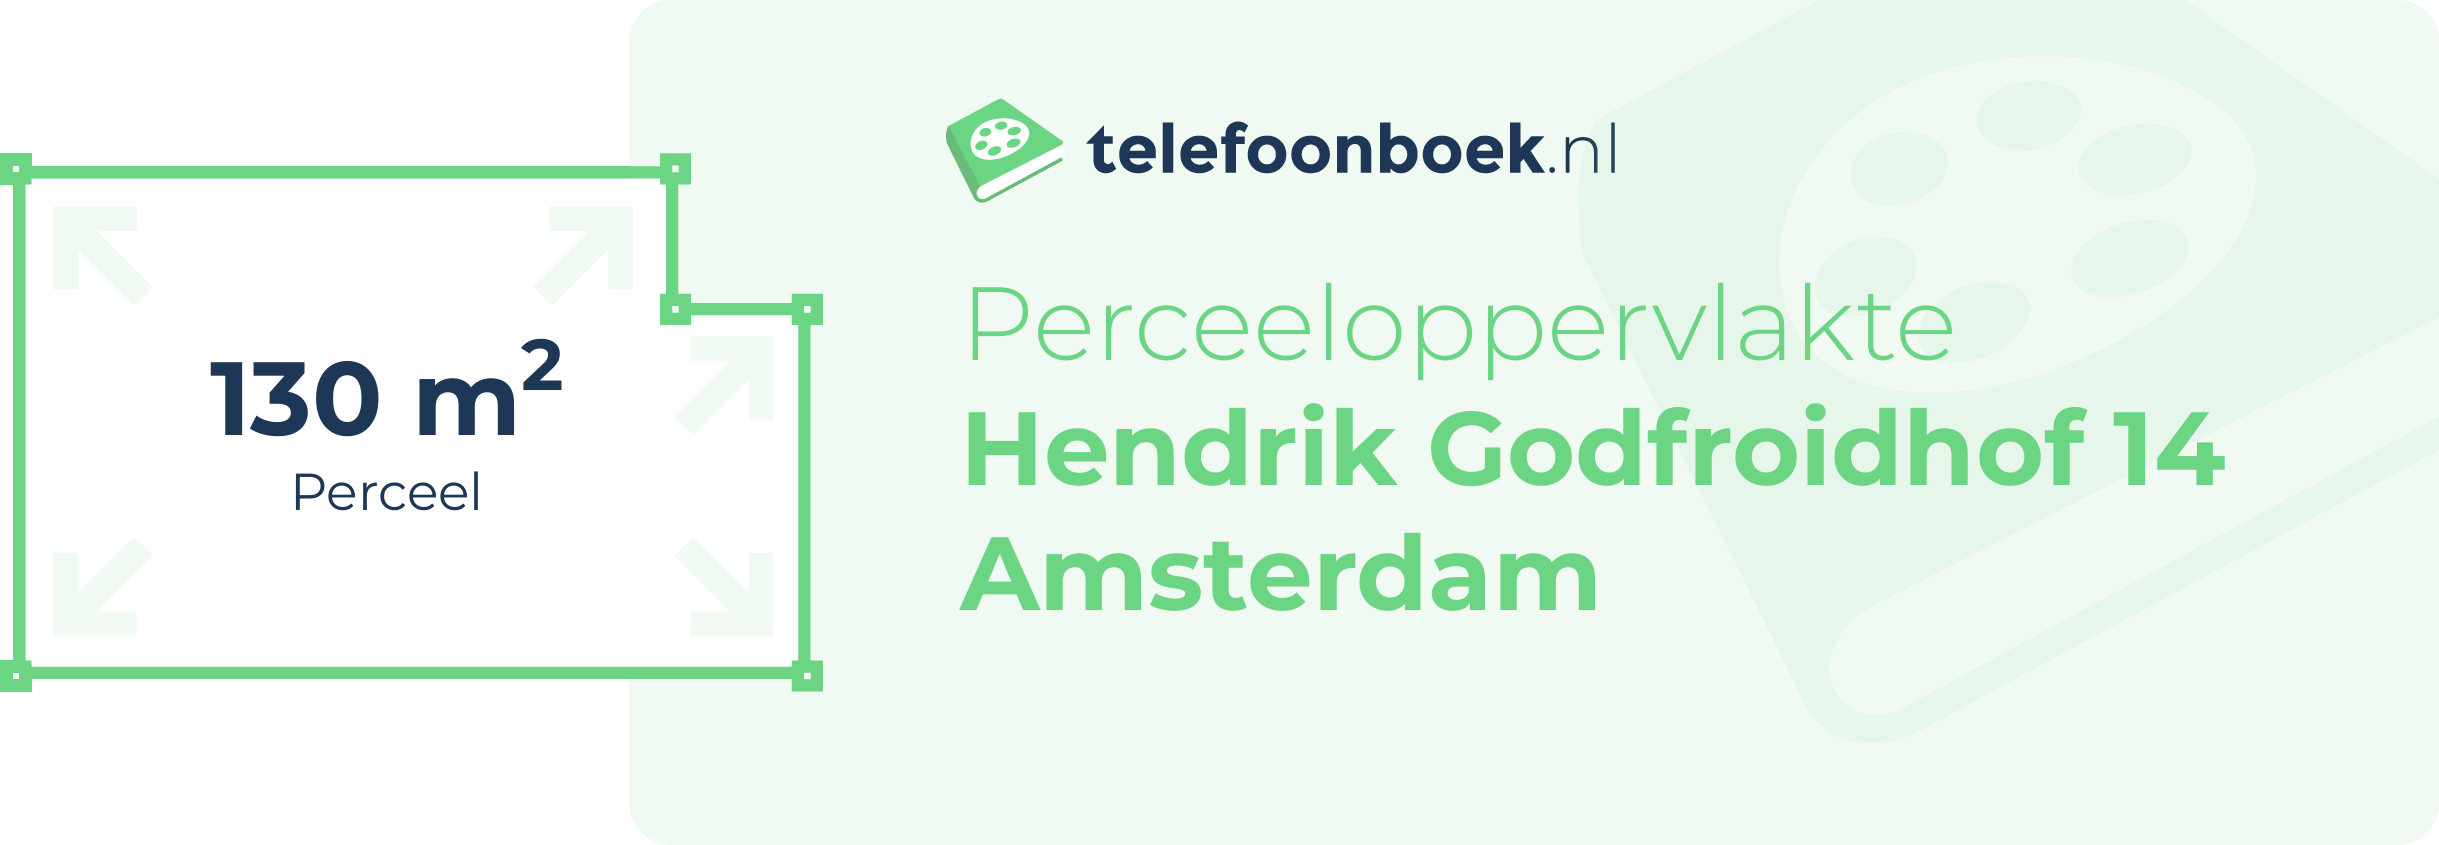 Perceeloppervlakte Hendrik Godfroidhof 14 Amsterdam